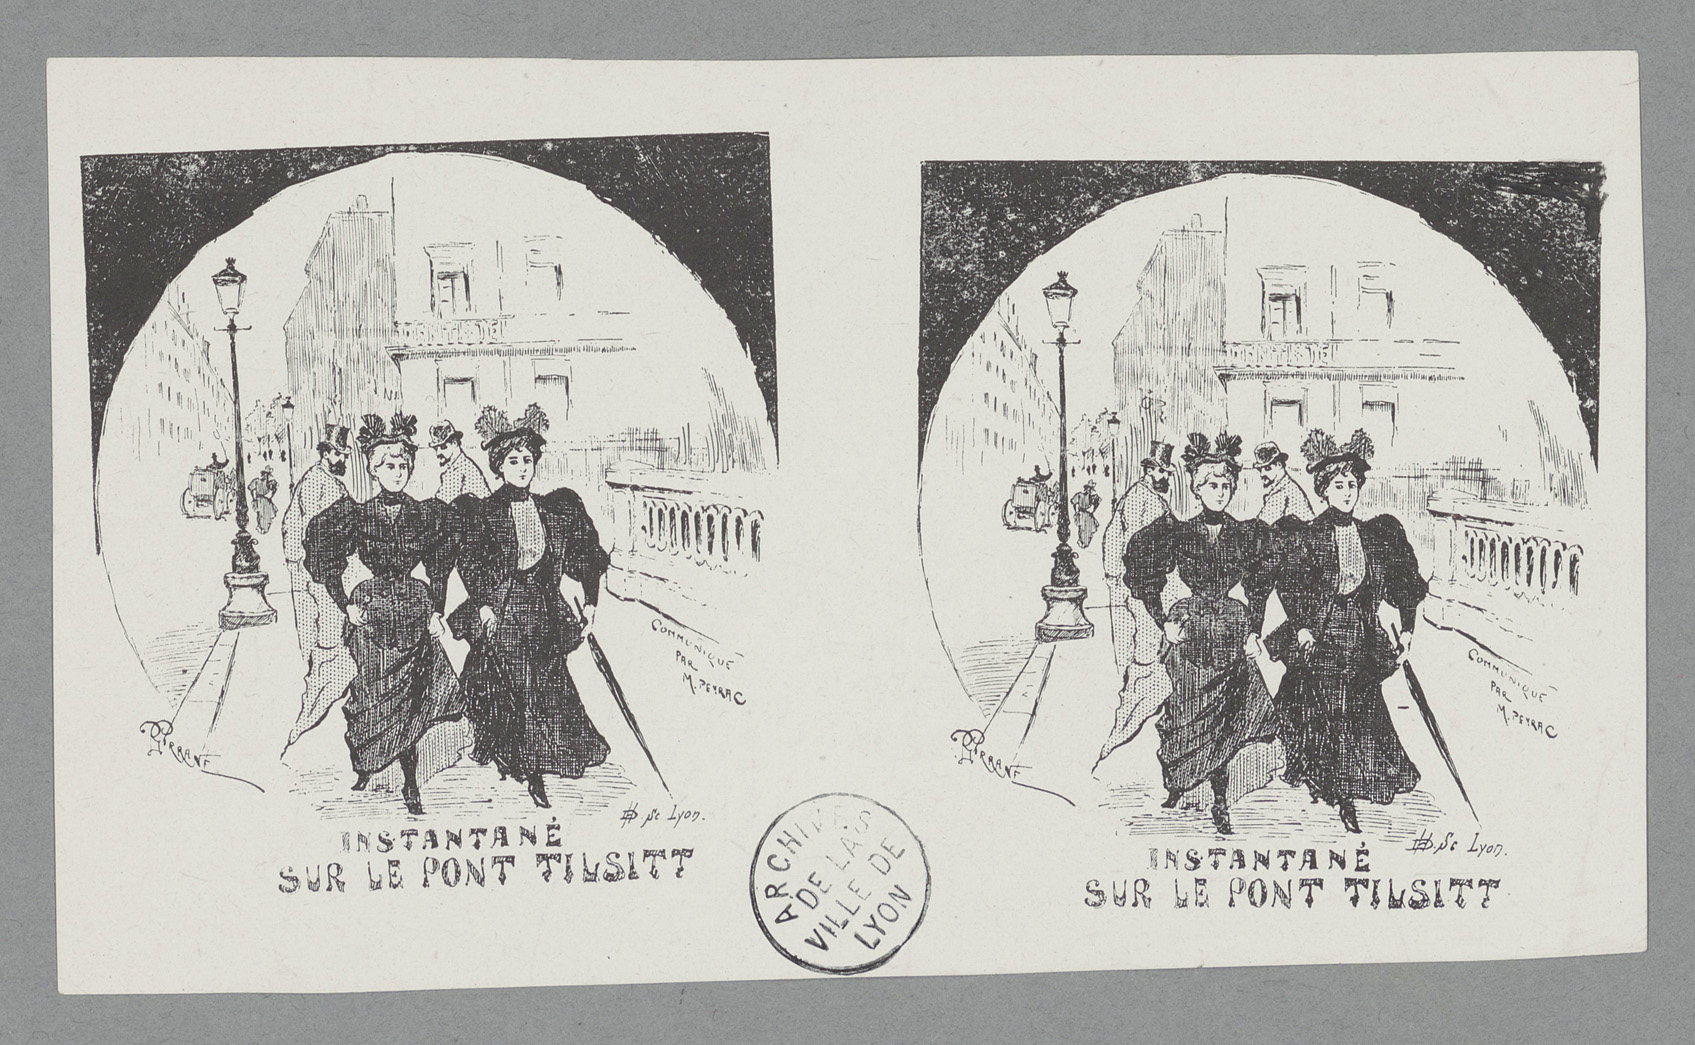 Instantané sur le pont Tislitt (2 exemplaires) : typogravure paru dans Le Progrès Illustré par Gustave Garnier (04/08/1895, cote : 63FI/47)